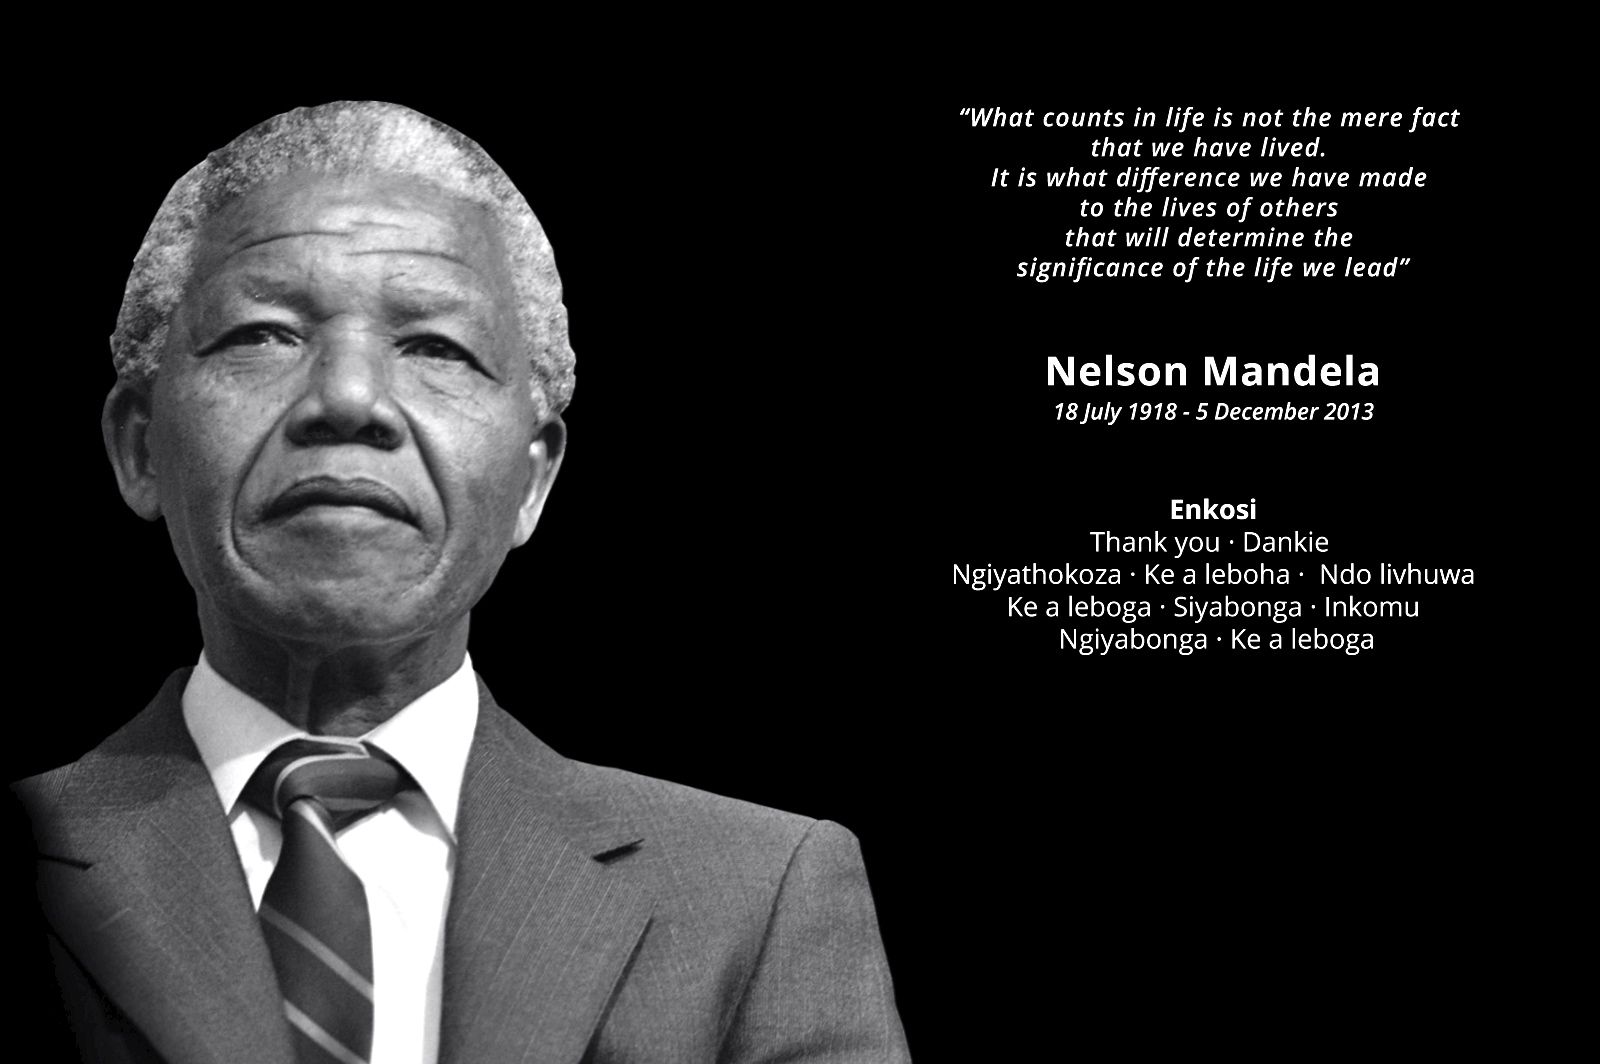 Nelson Mandela Wallpapers